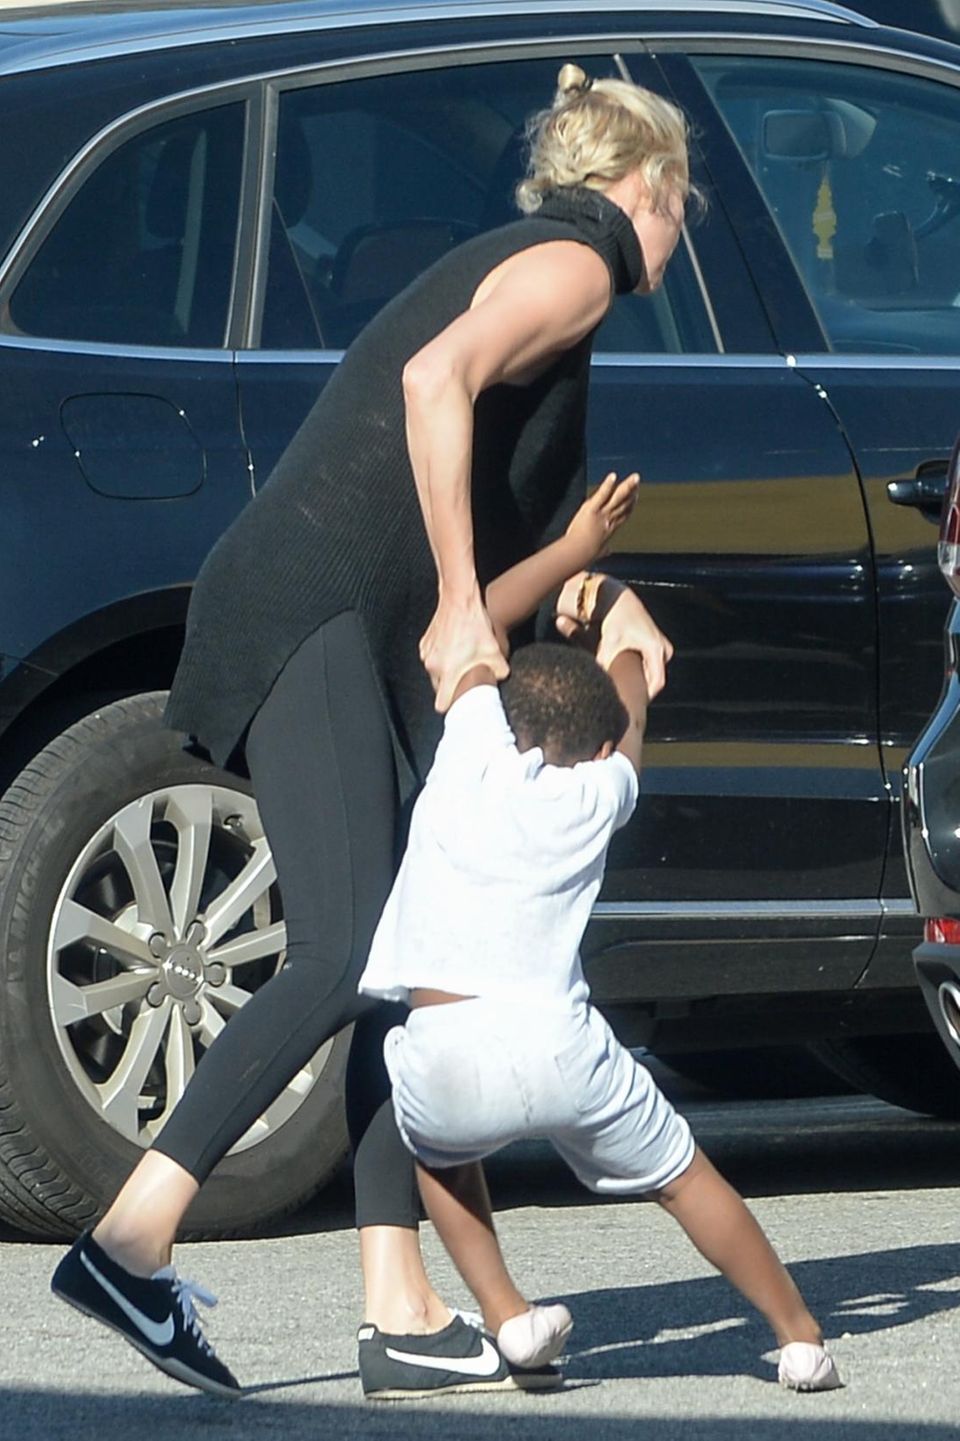 Da hat aber jemand schlechte Laune: Charlize Theron versucht ihren sturen Sohn ins Auto zu bugsieren